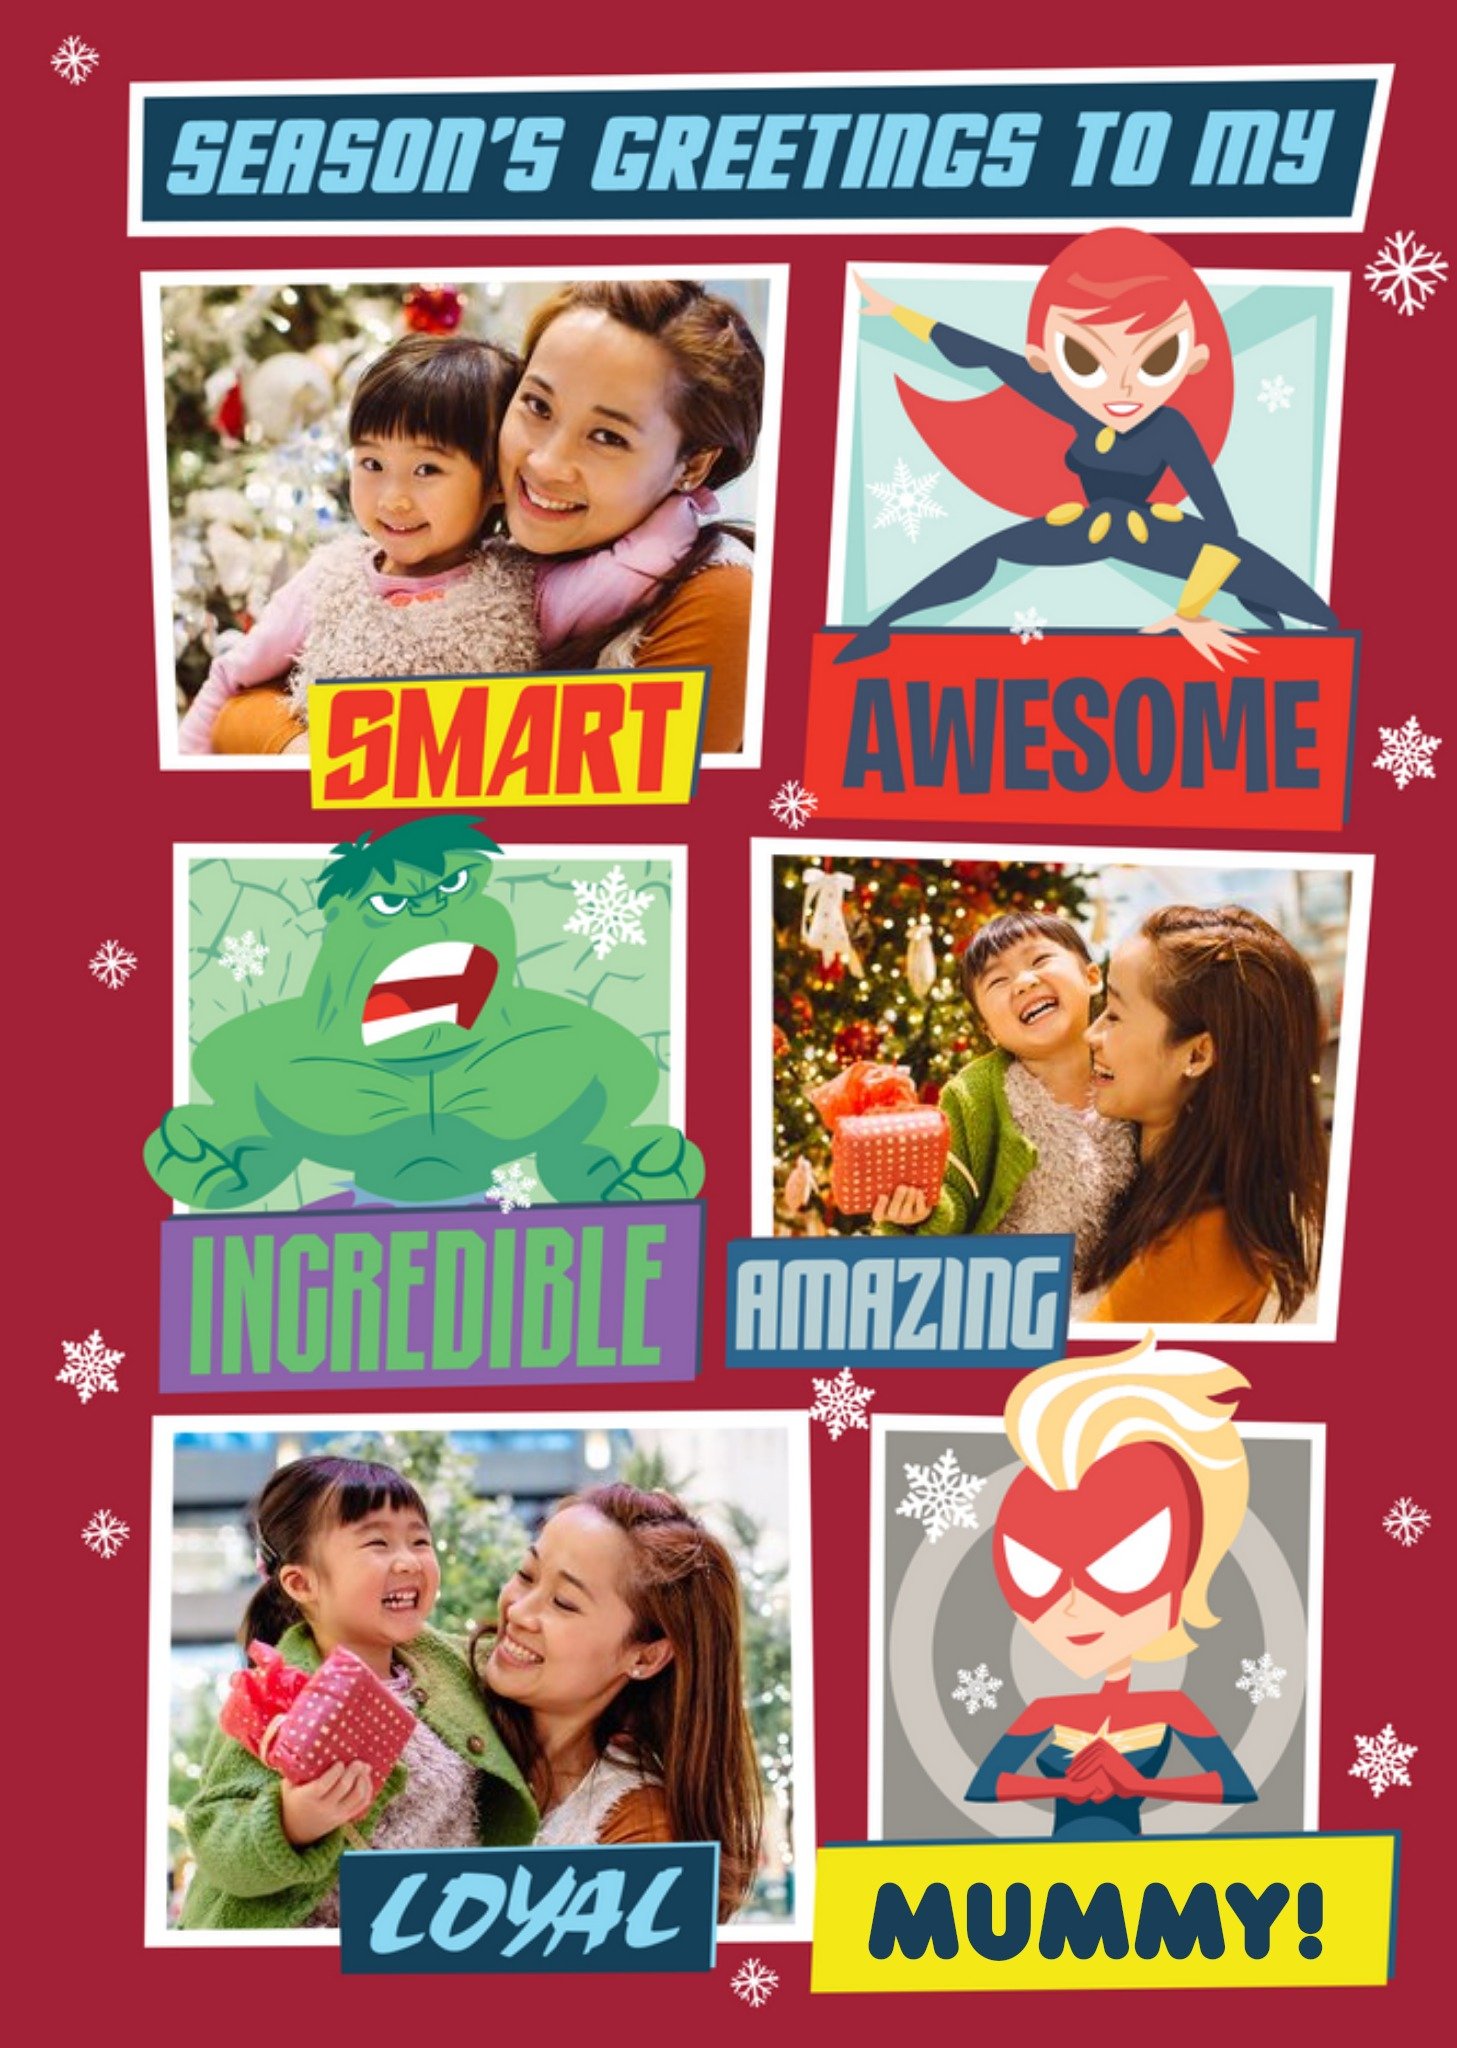 Disney Marvel Comics Avengers Mummy Photo Upload Christmas Card, Large